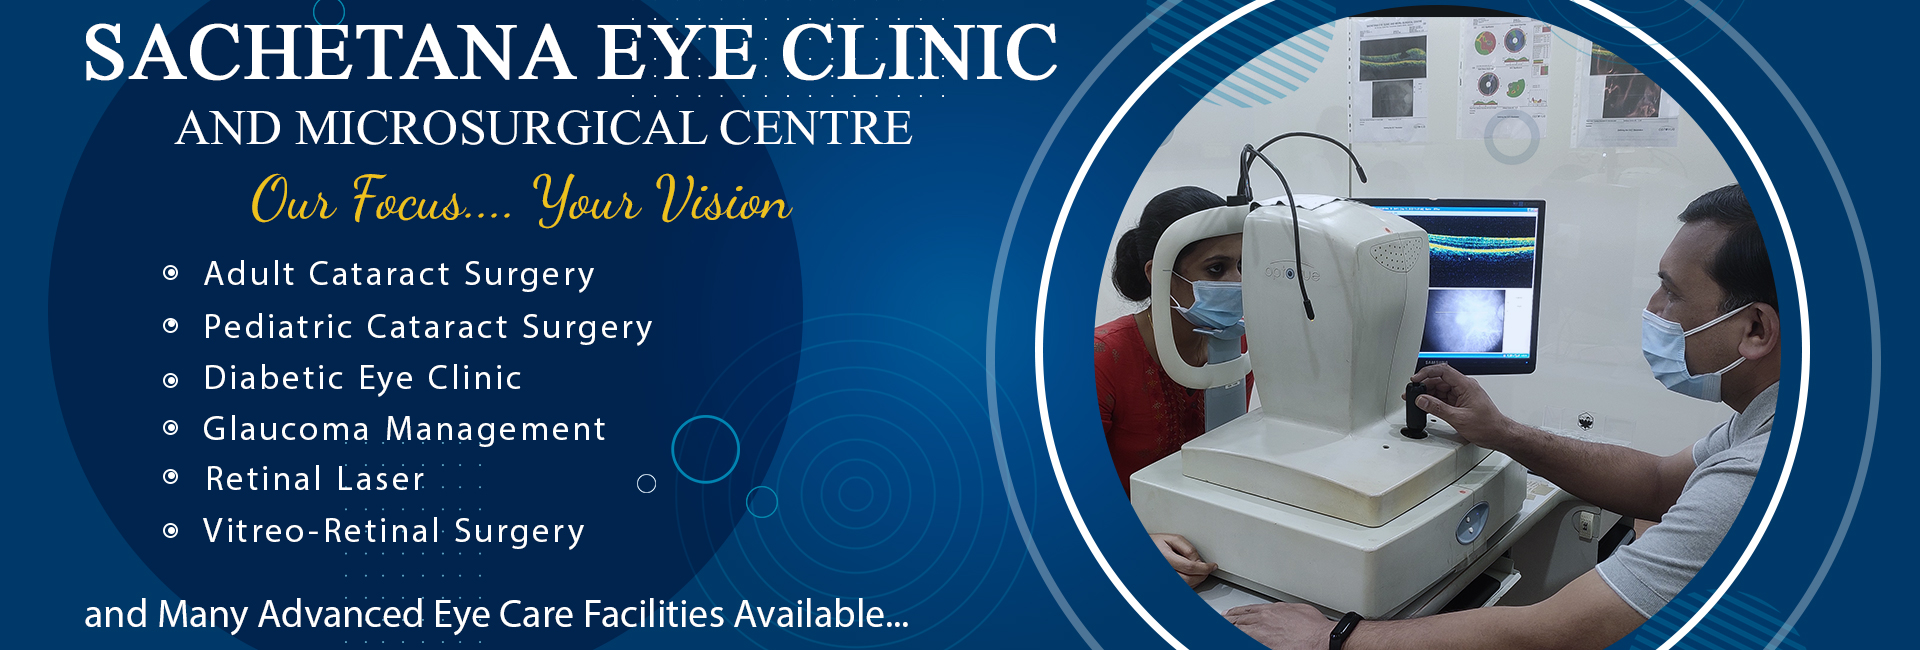 Sachetana Eye Clinic